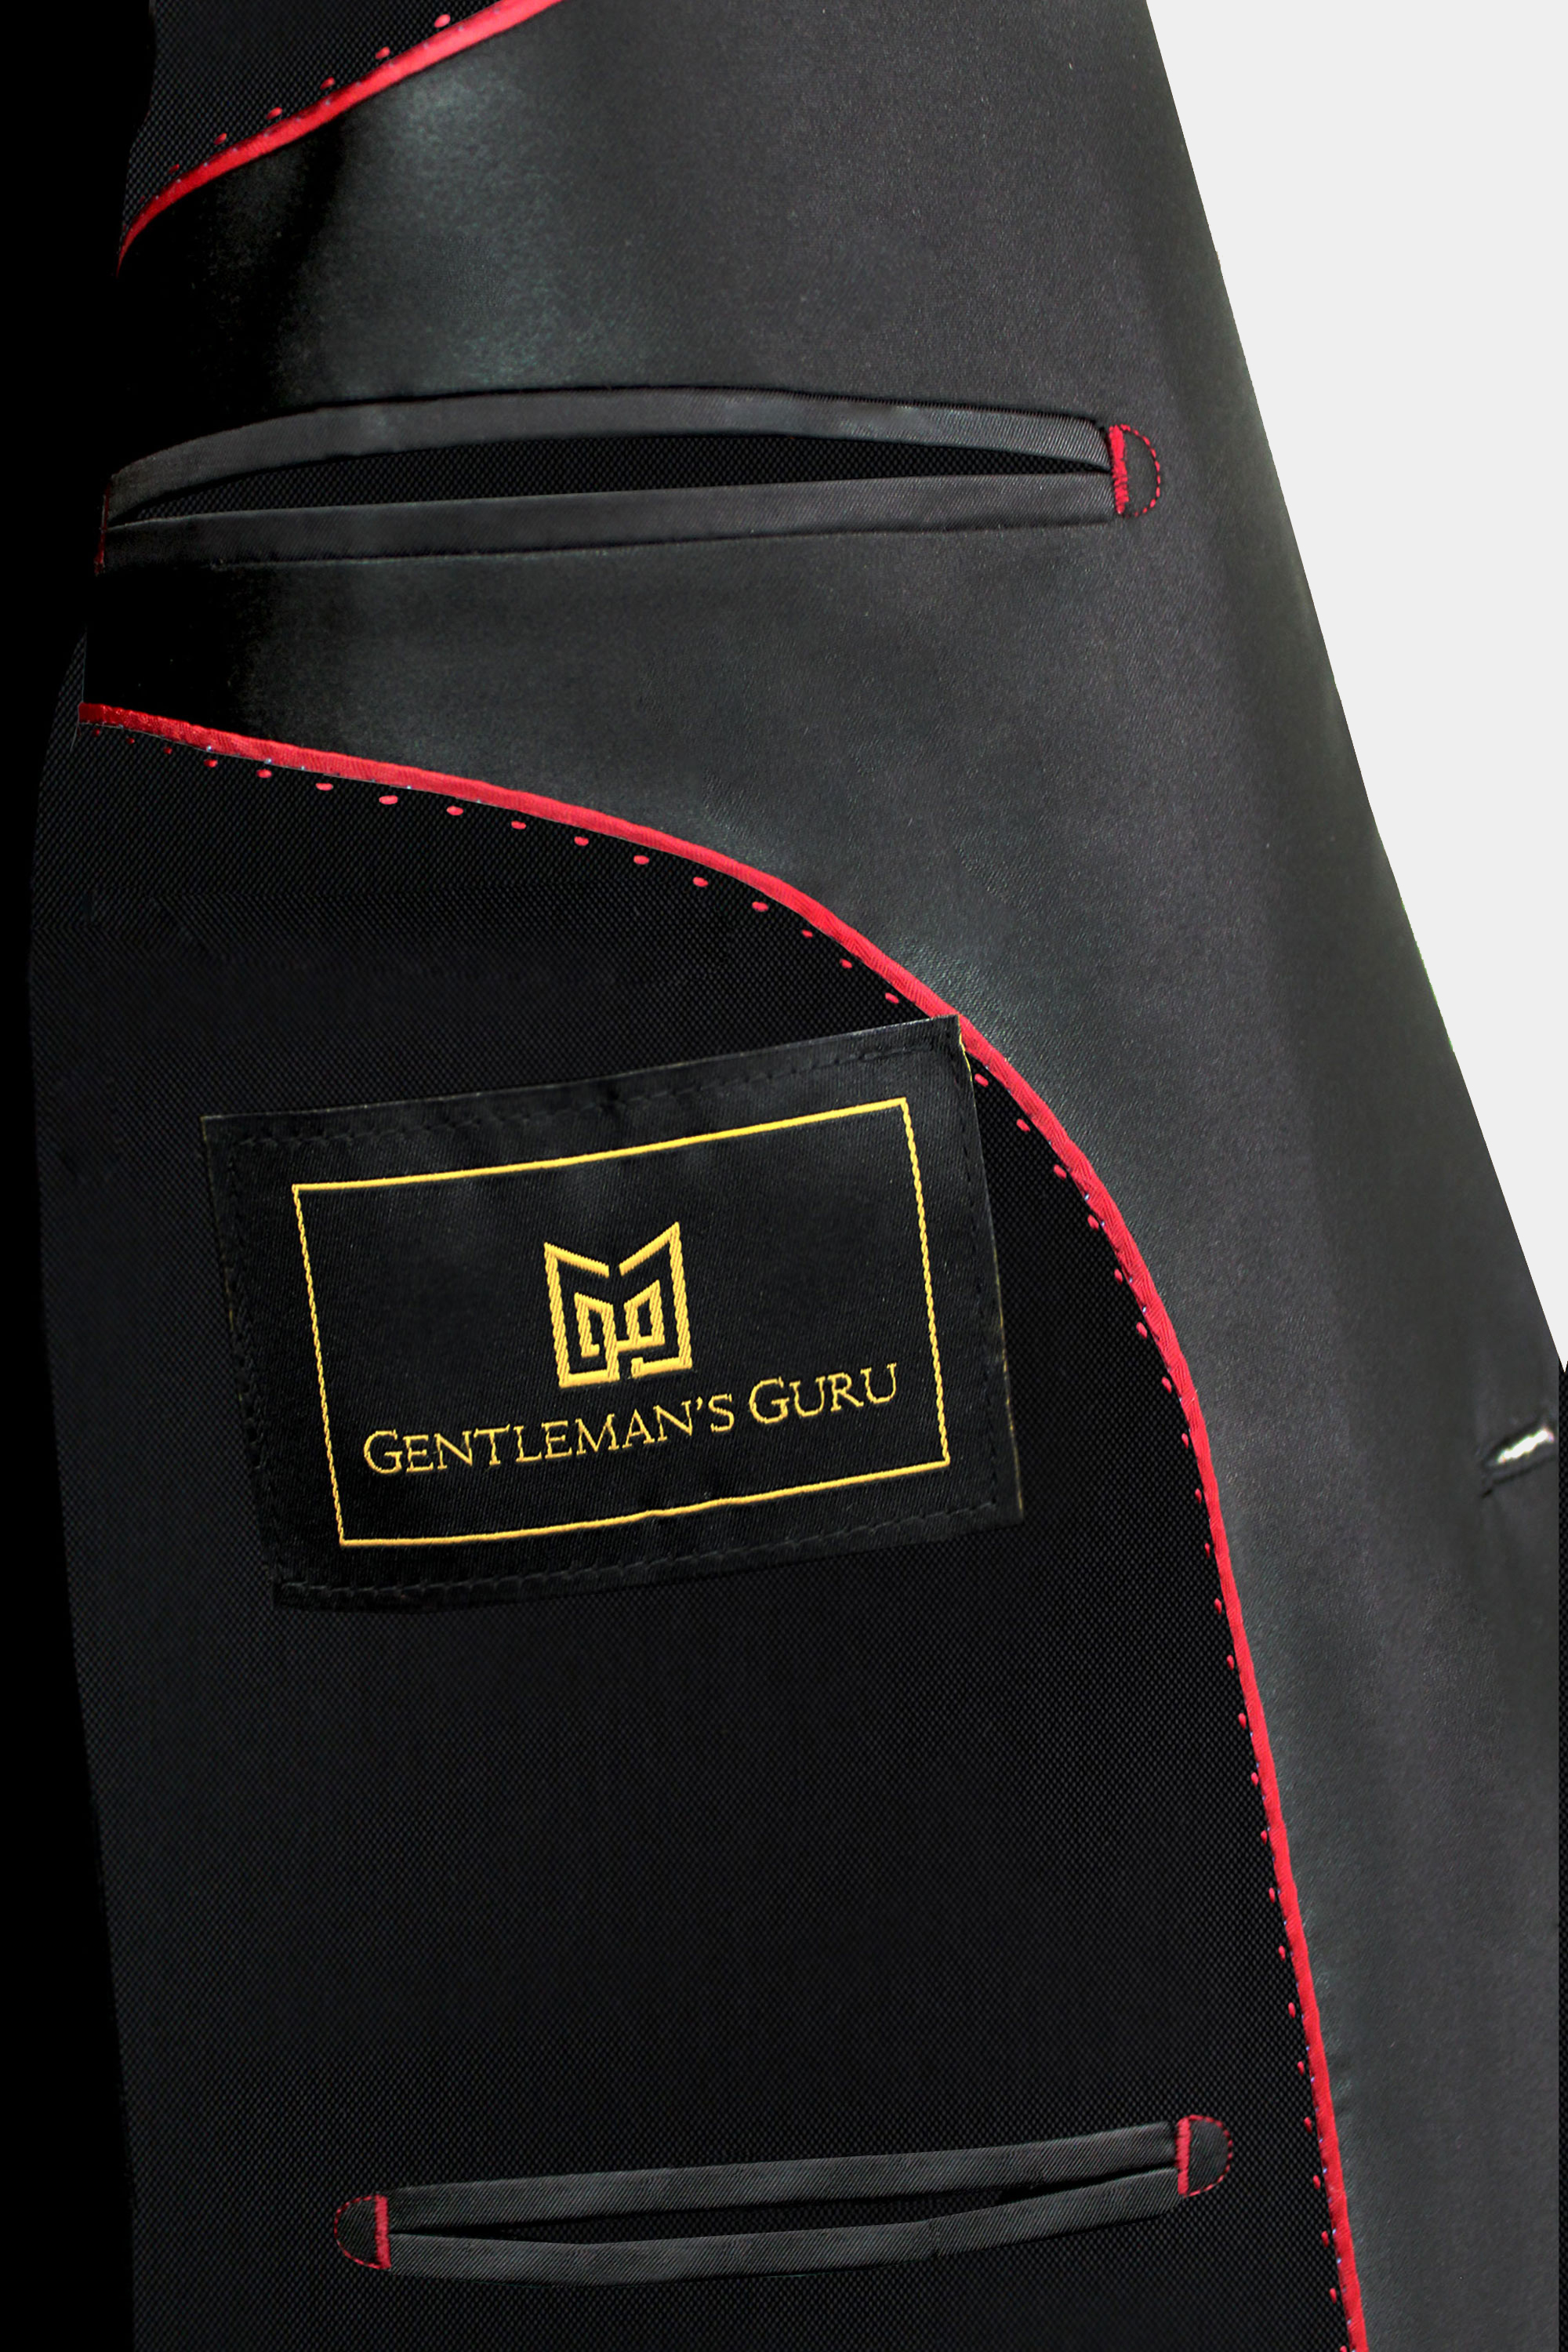 Gentleman's Guru Black Velvet Tuxedo Jacket 38R